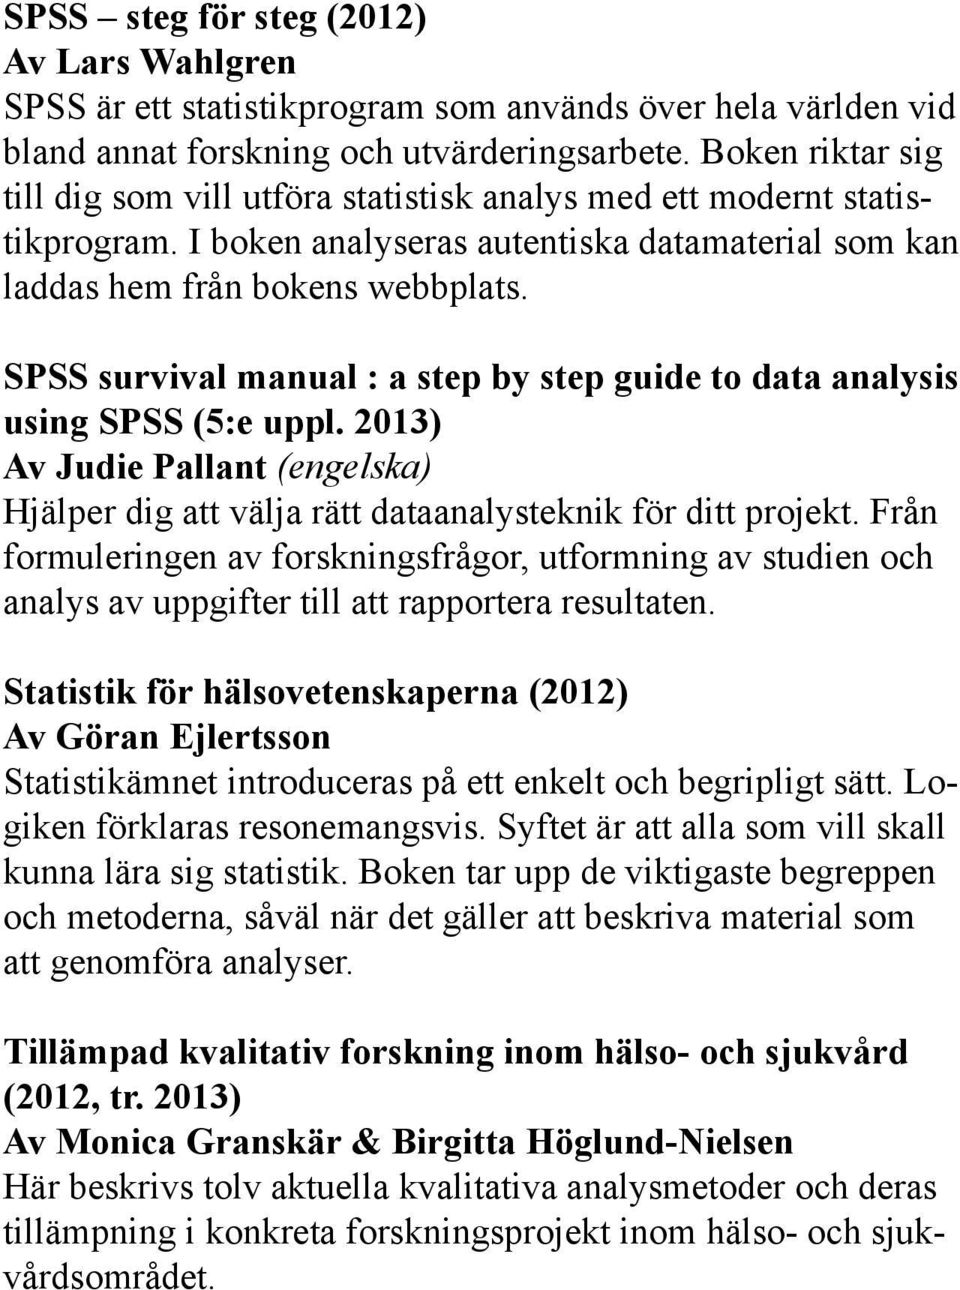 SPSS survival manual : a step by step guide to data analysis using SPSS (5:e uppl. 2013) Av Judie Pallant (engelska) Hjälper dig att välja rätt dataanalysteknik för ditt projekt.